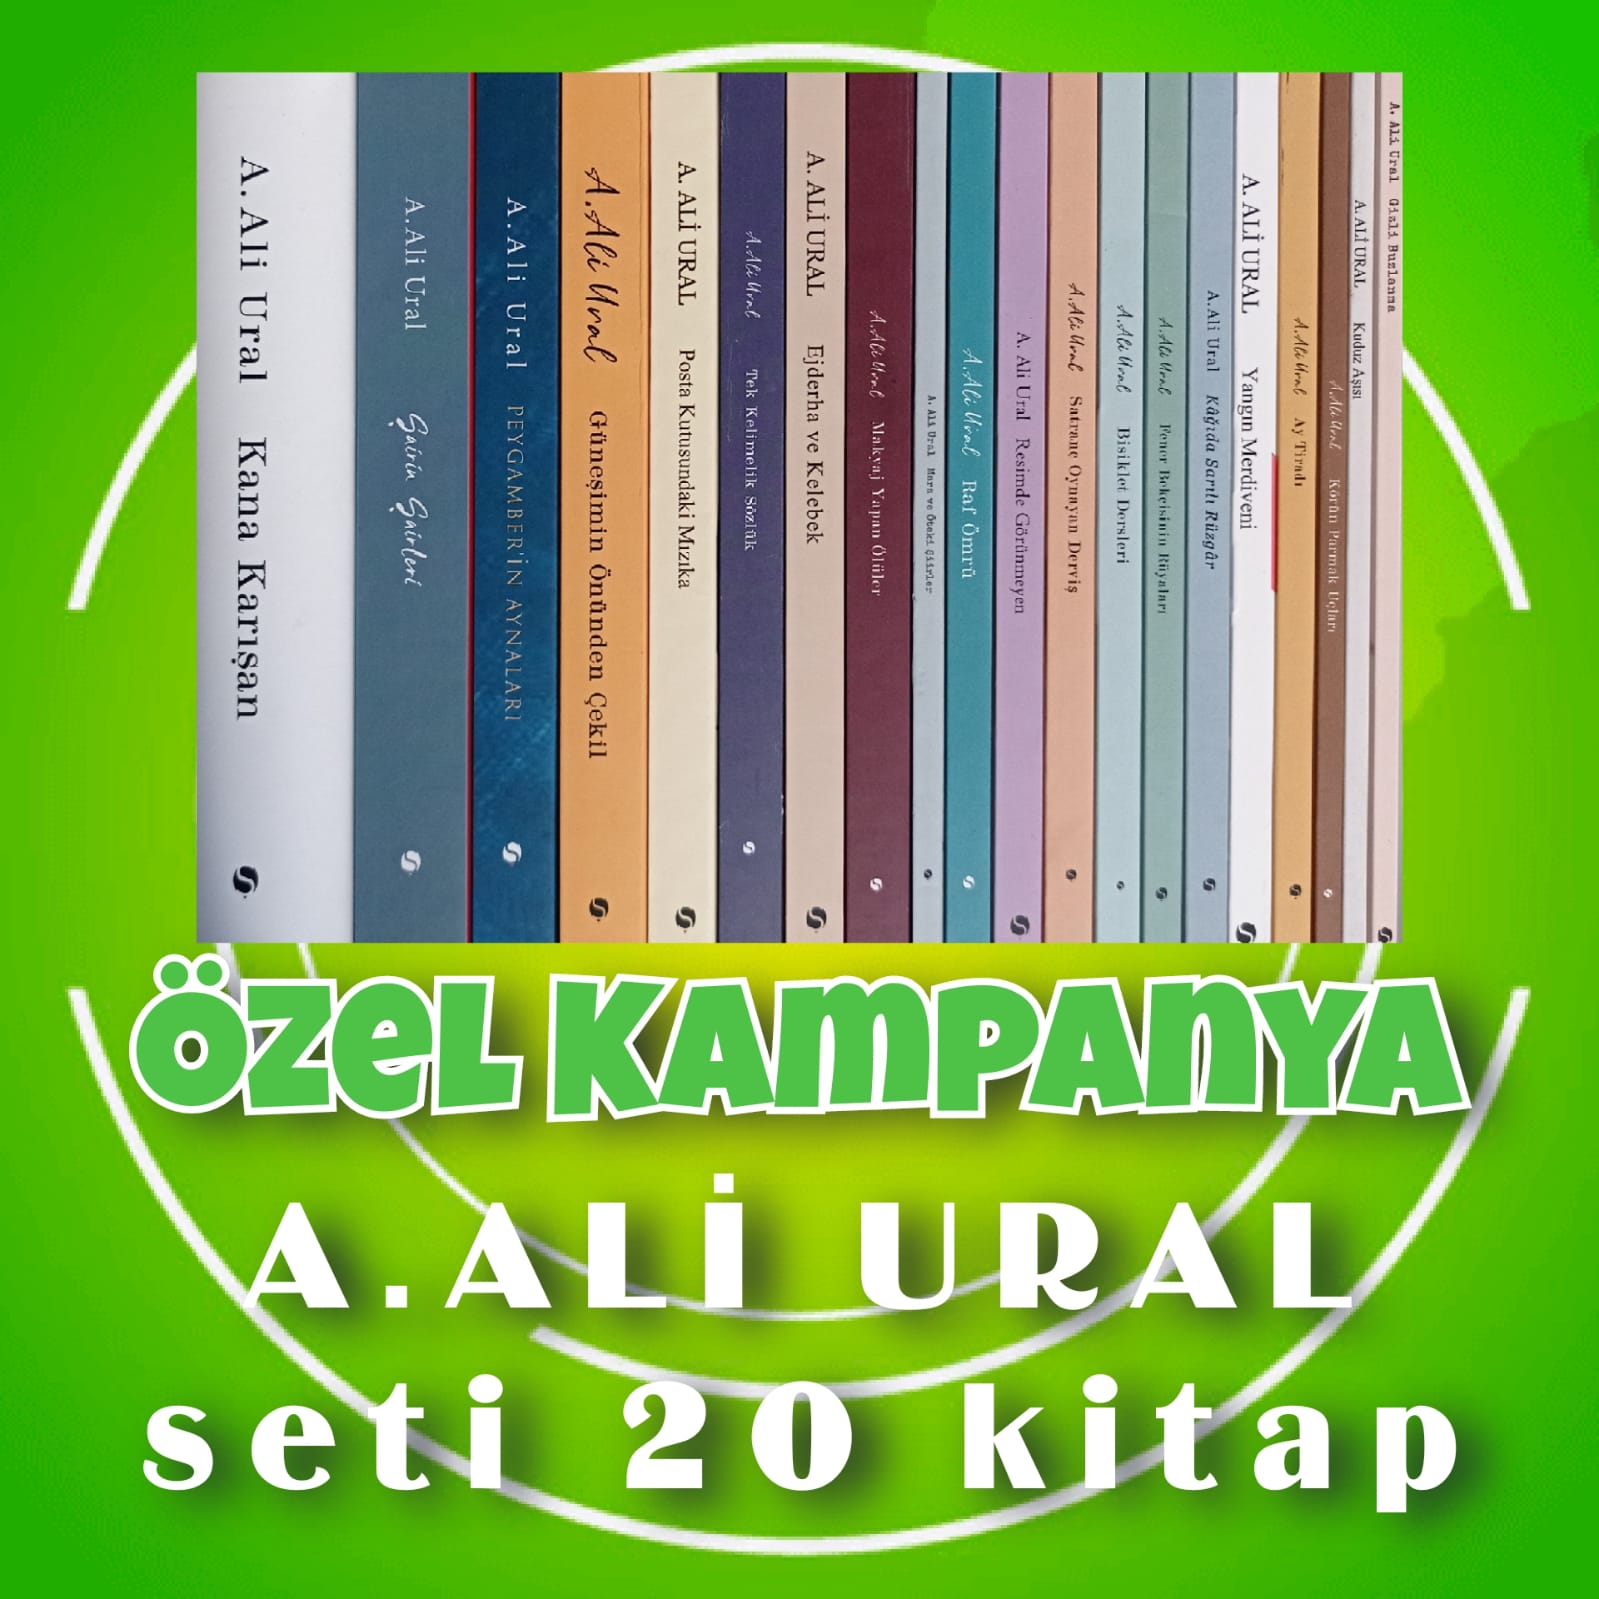 A.Ali Ural Seti 20 Kitap